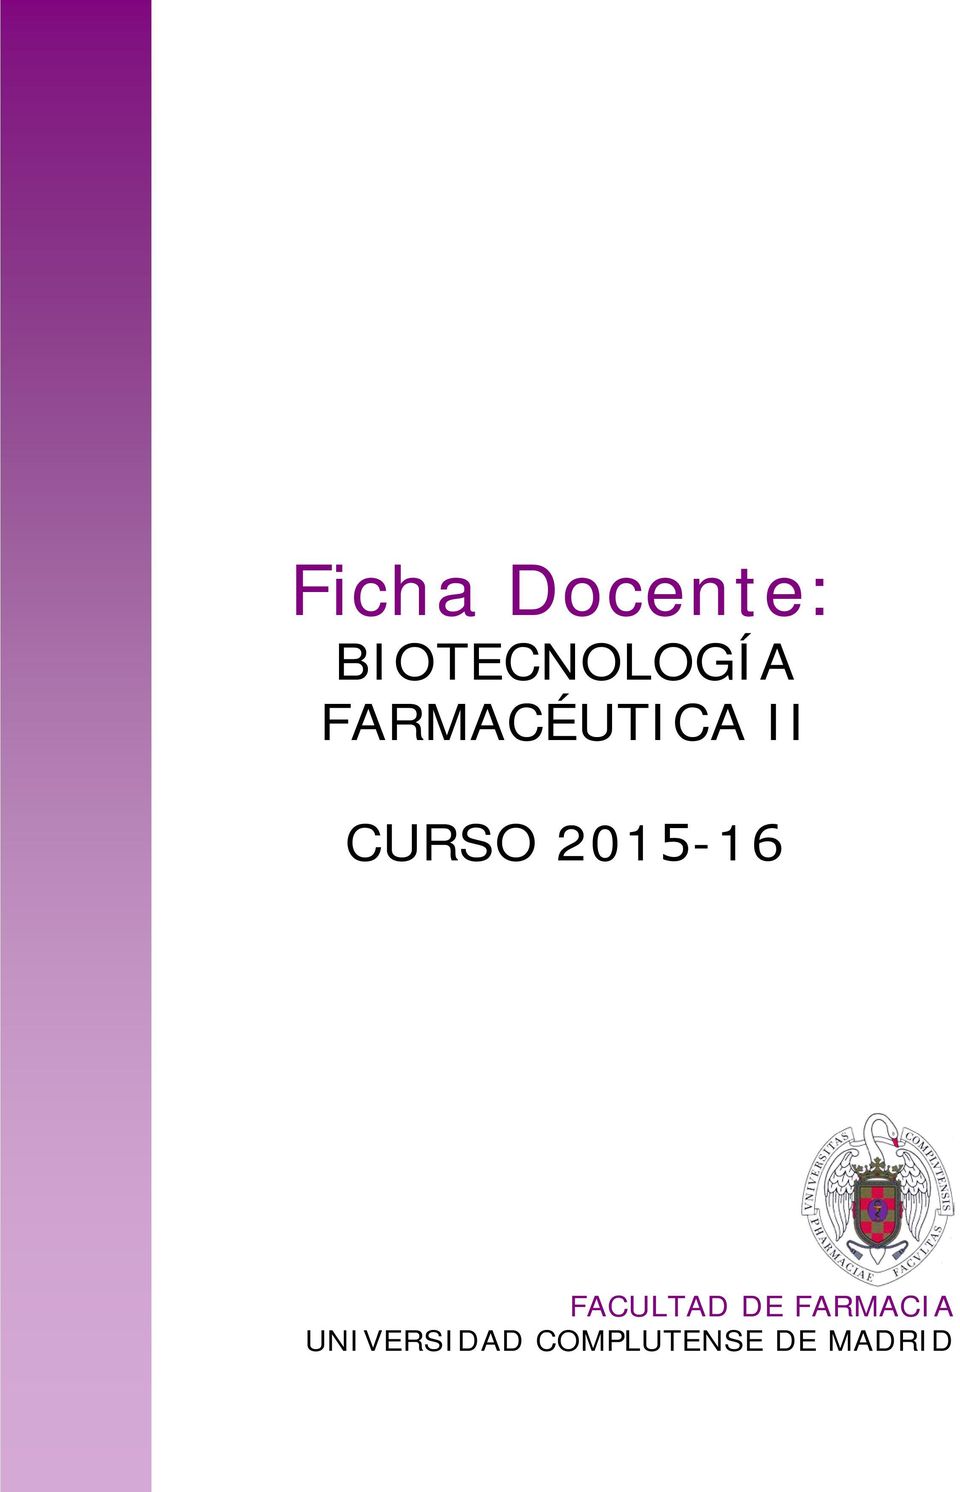 2015-16 FACULTAD DE FARMACIA